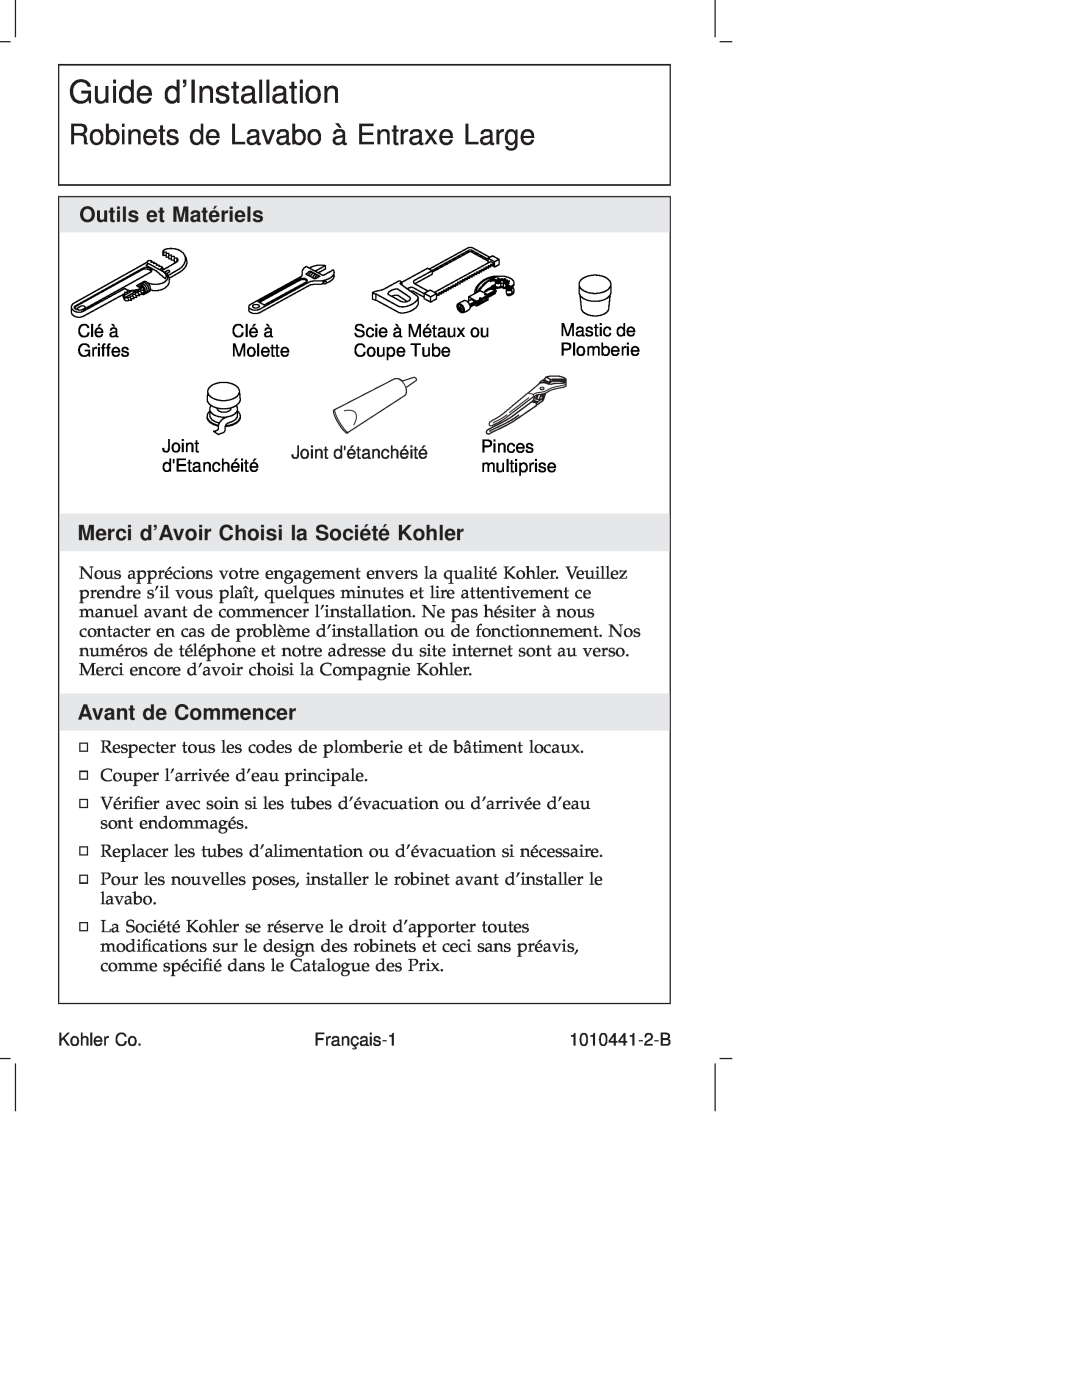 Kohler K-310, K-6811 manual Guide dInstallation, Robinets de Lavabo à Entraxe Large, Outils et Matériels, Avant de Commencer 